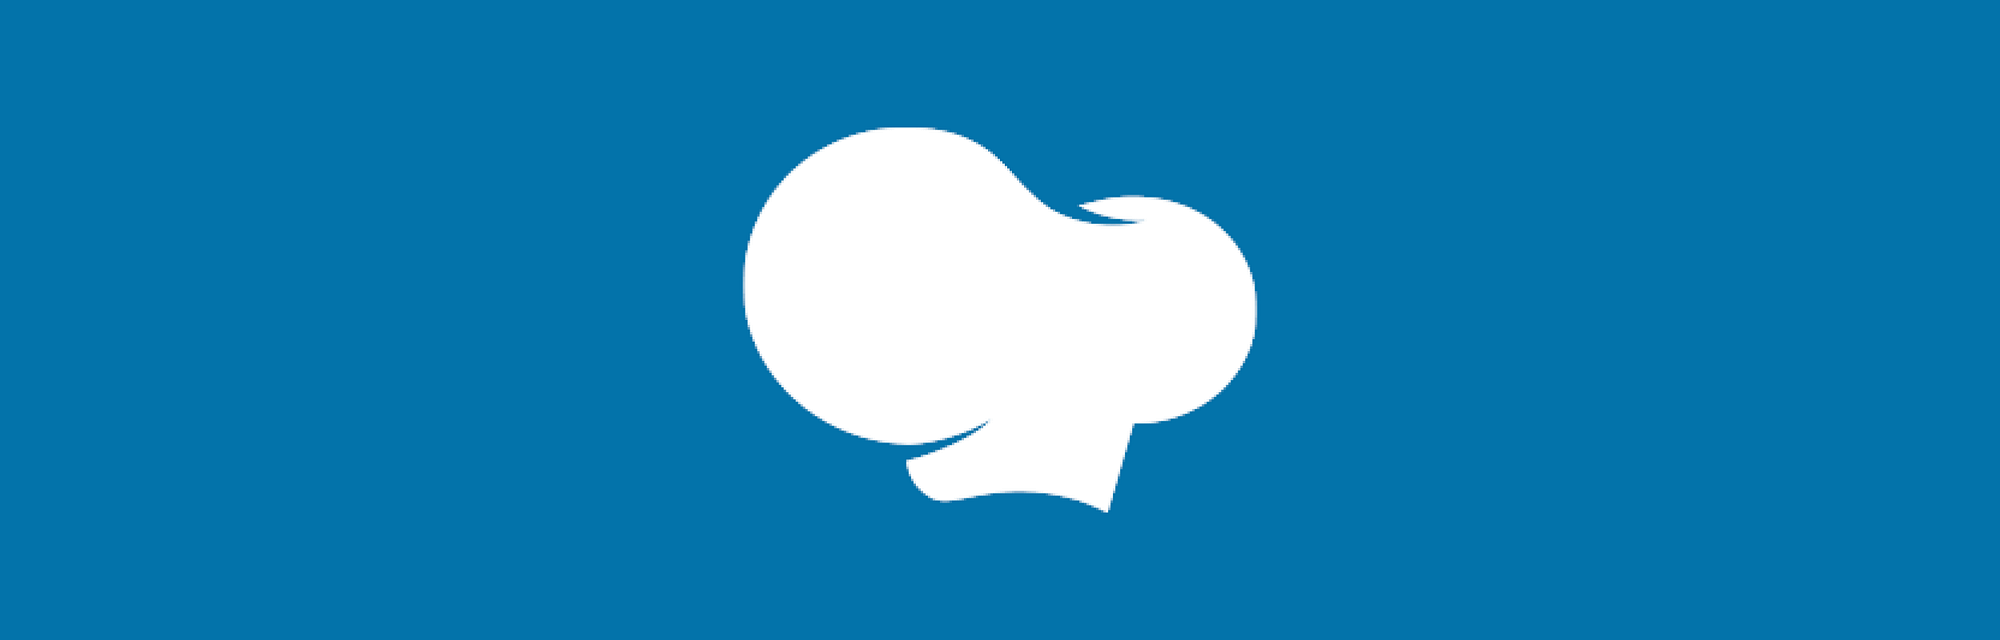 wpbakery_logo